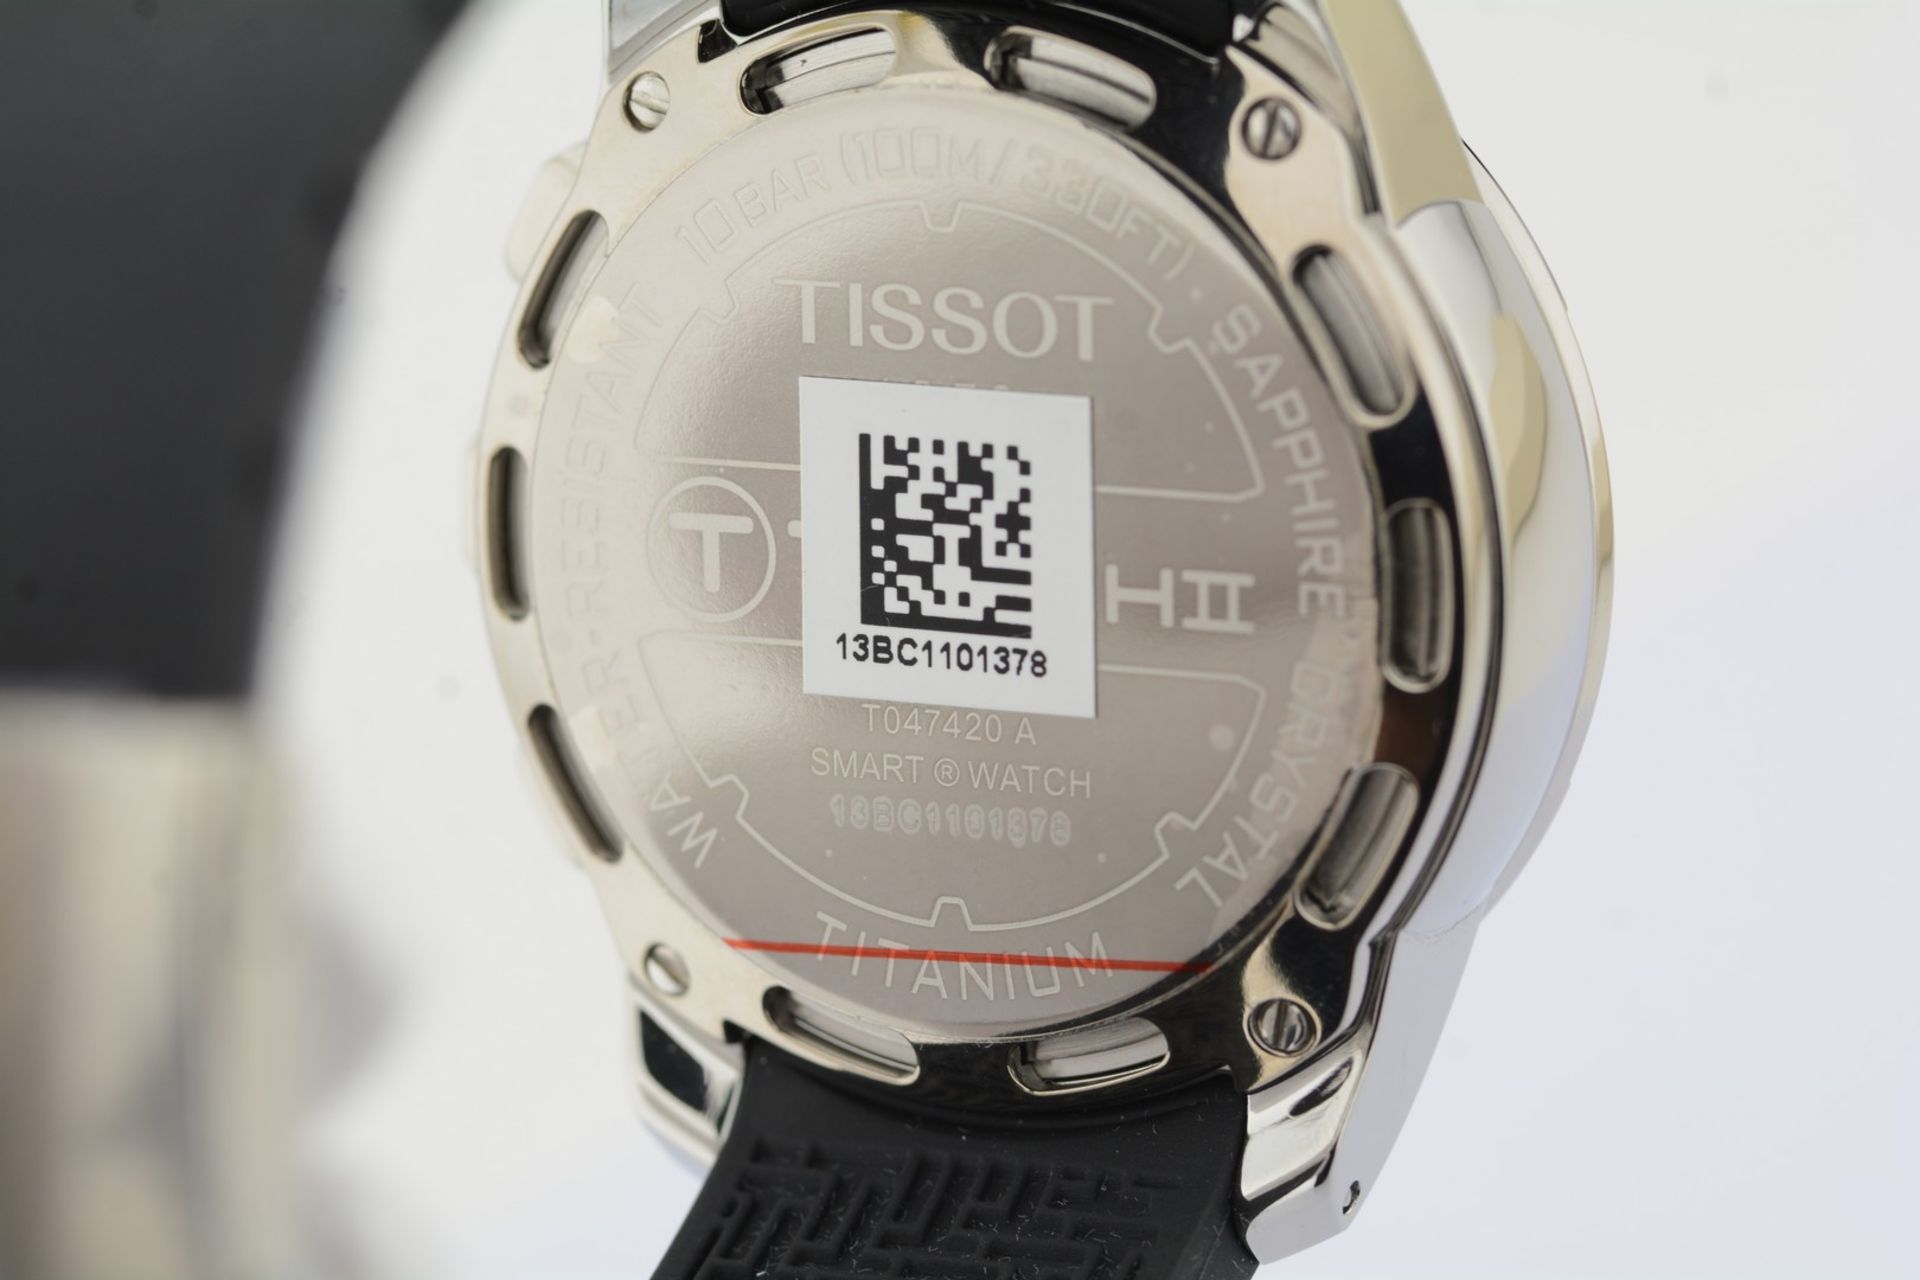 Tissot / T-Touch II Smart (New) - Gentlmen's Steel Wrist Watch - Image 10 of 12